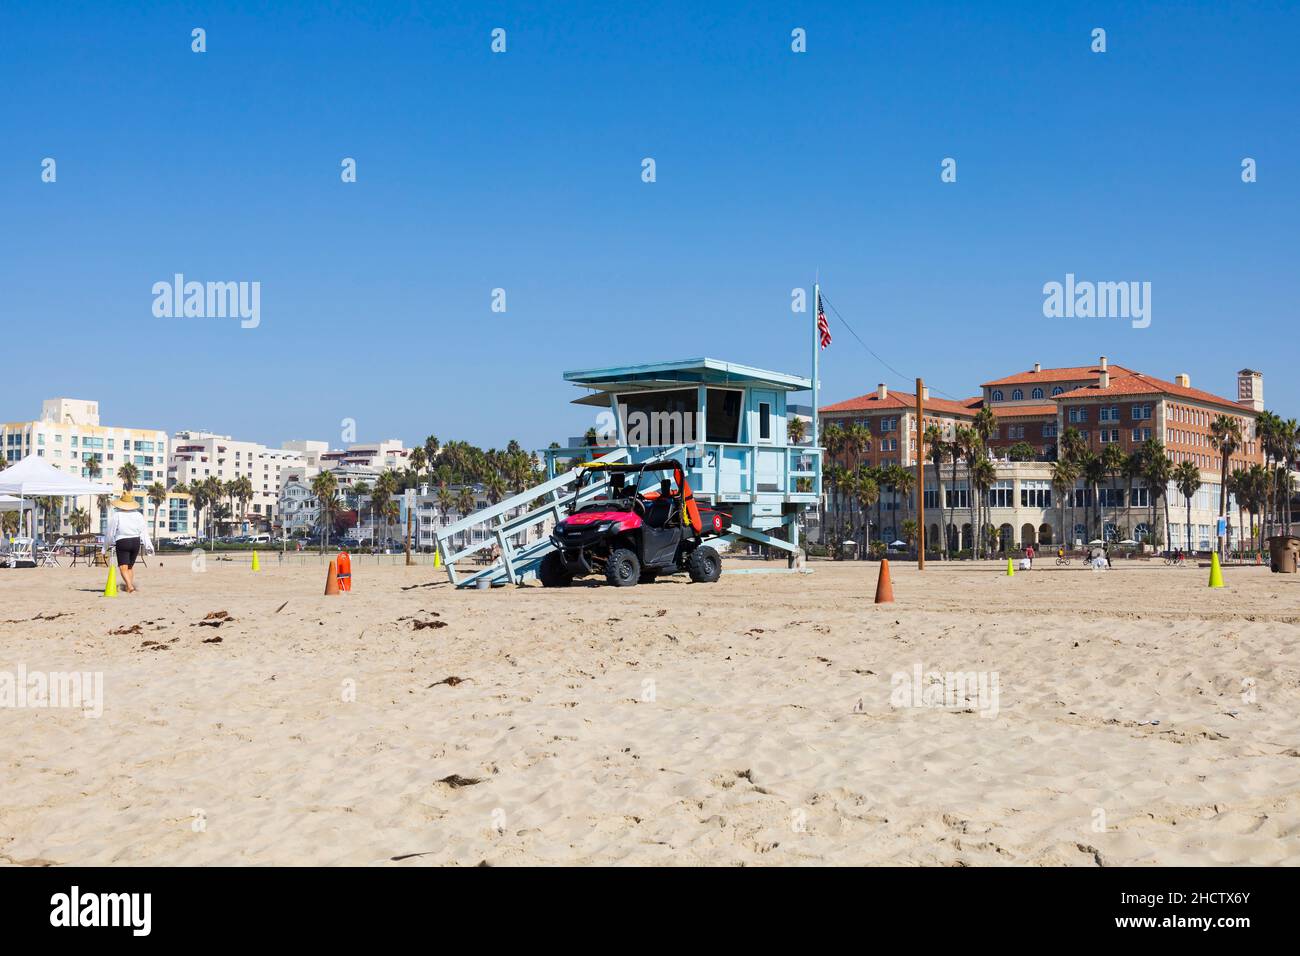 Rettungsschwimmerhütte mit Honda Quad-Rettungswagen am Santa Monica Beach. Kalifornien, Vereinigte Staaten von Amerika Stockfoto